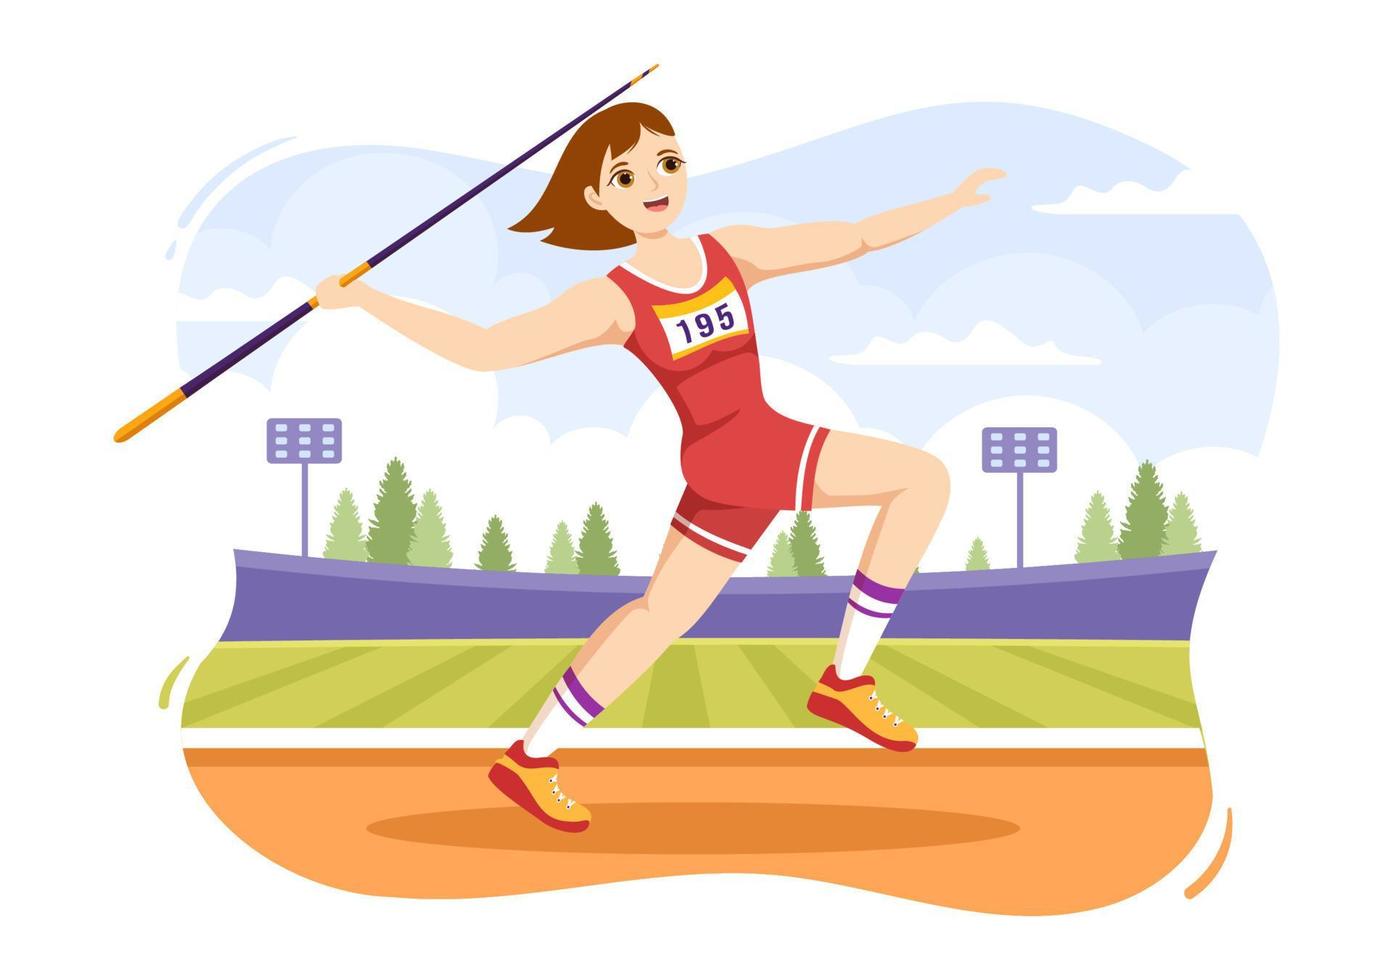 ilustração de atleta de lançamento de dardo usando uma ferramenta em forma de lança longa para lançar em atividade esportiva modelo desenhado à mão de desenho animado plano vetor